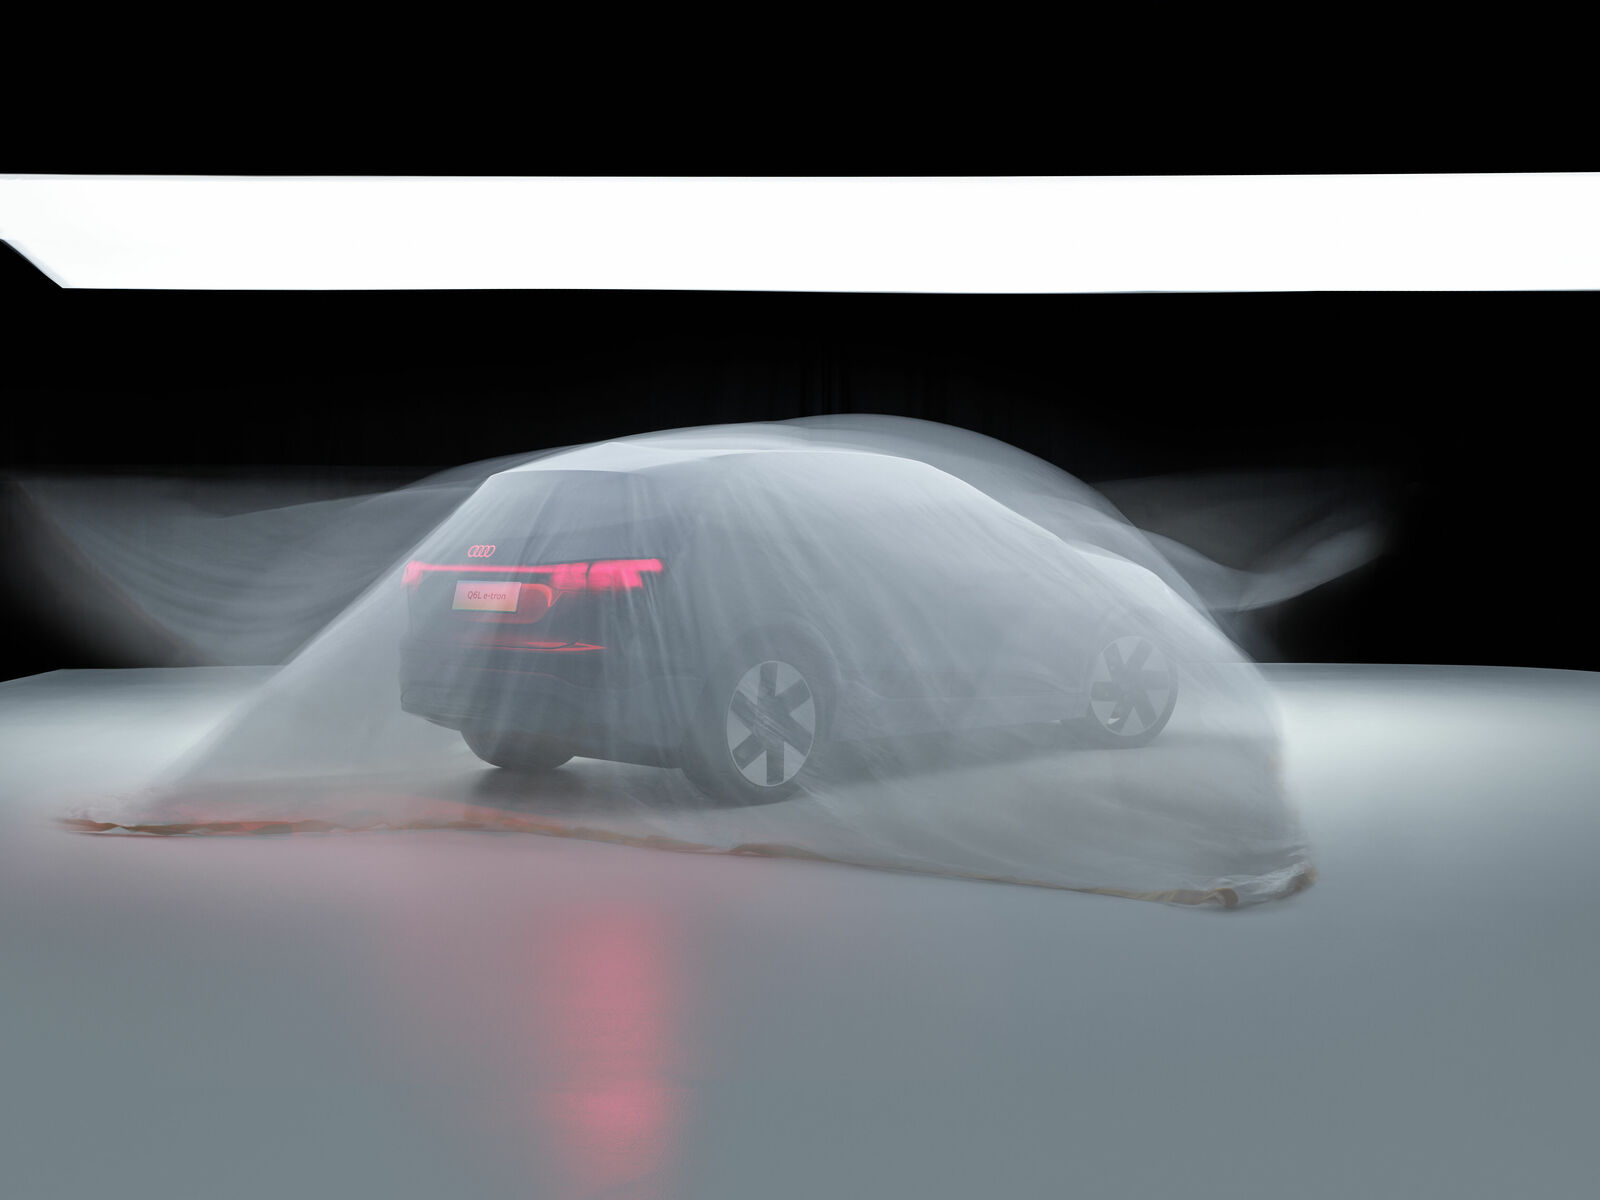 Ein Audi, bedeckt von einem durchsichtigen Tuch, das die Form des Autos und die roten Rücklichter hervorhebt, steht in einem dunklen Raum.